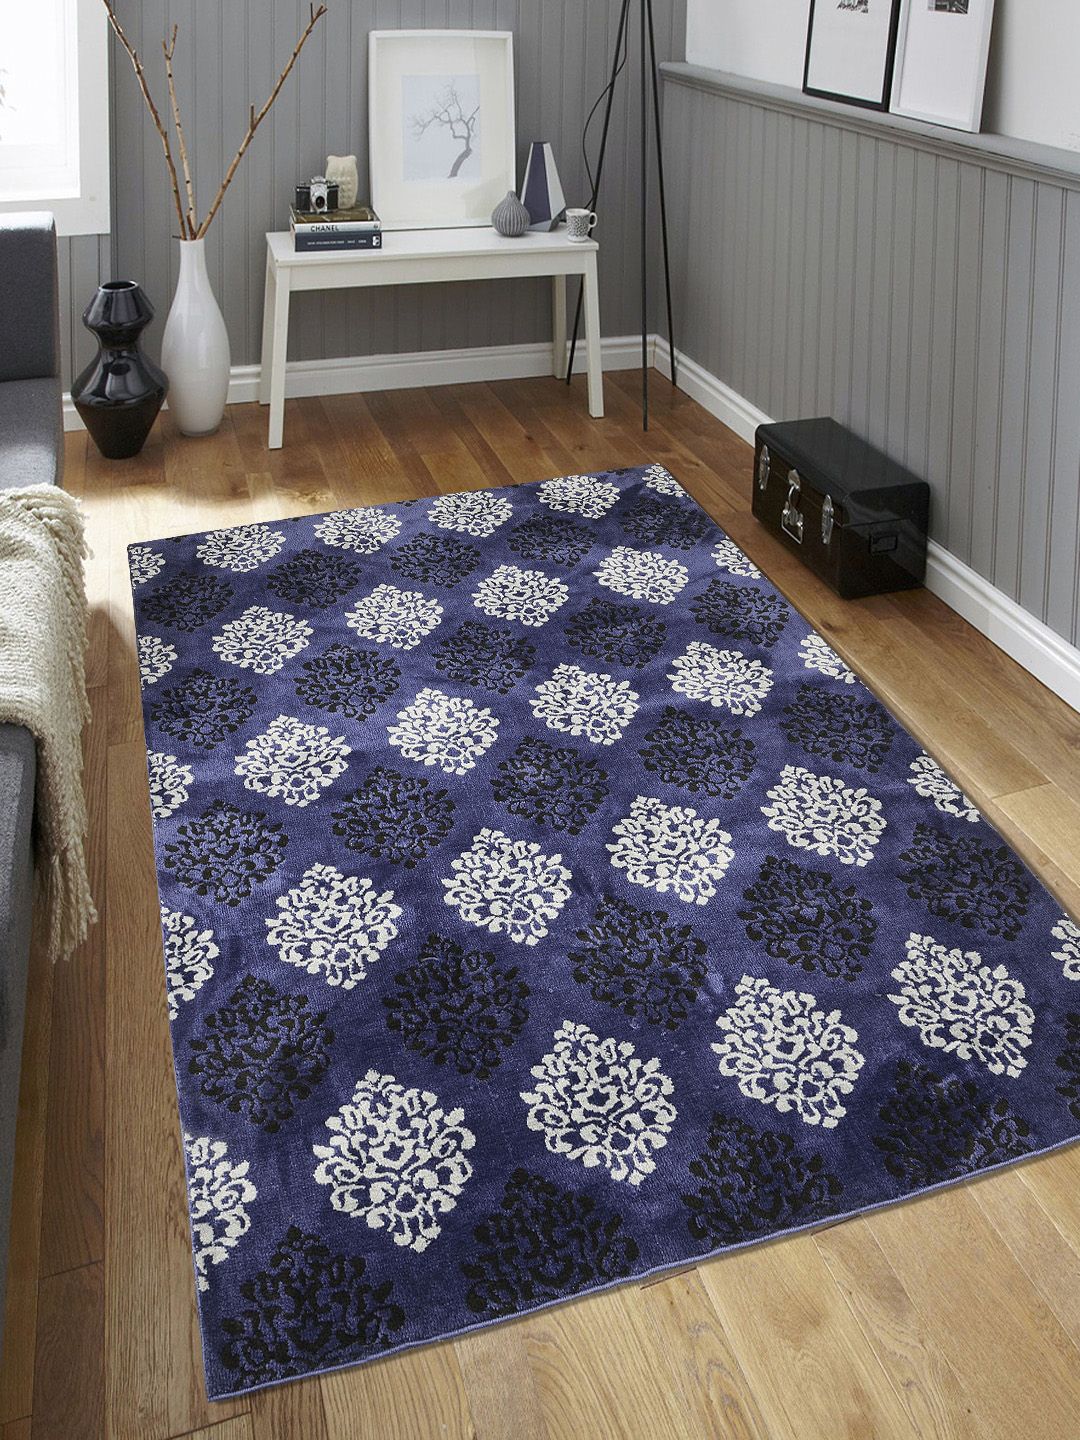 Saral Home Blue & Black Damask Pattern Anti-Skid Carpet Price in India